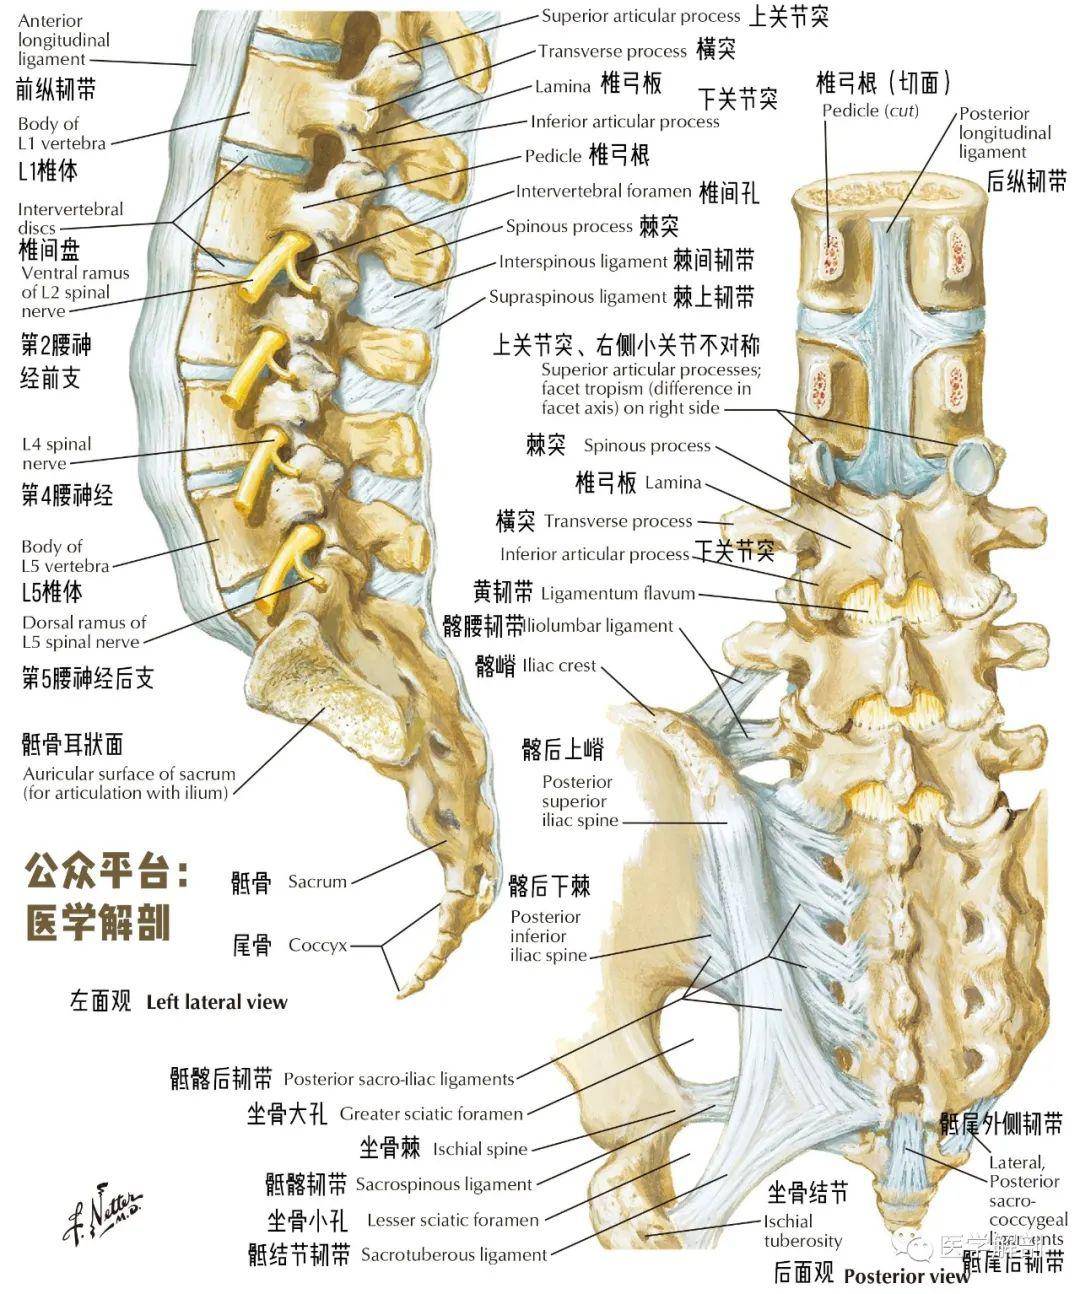 解剖图谱 骶椎详细解剖